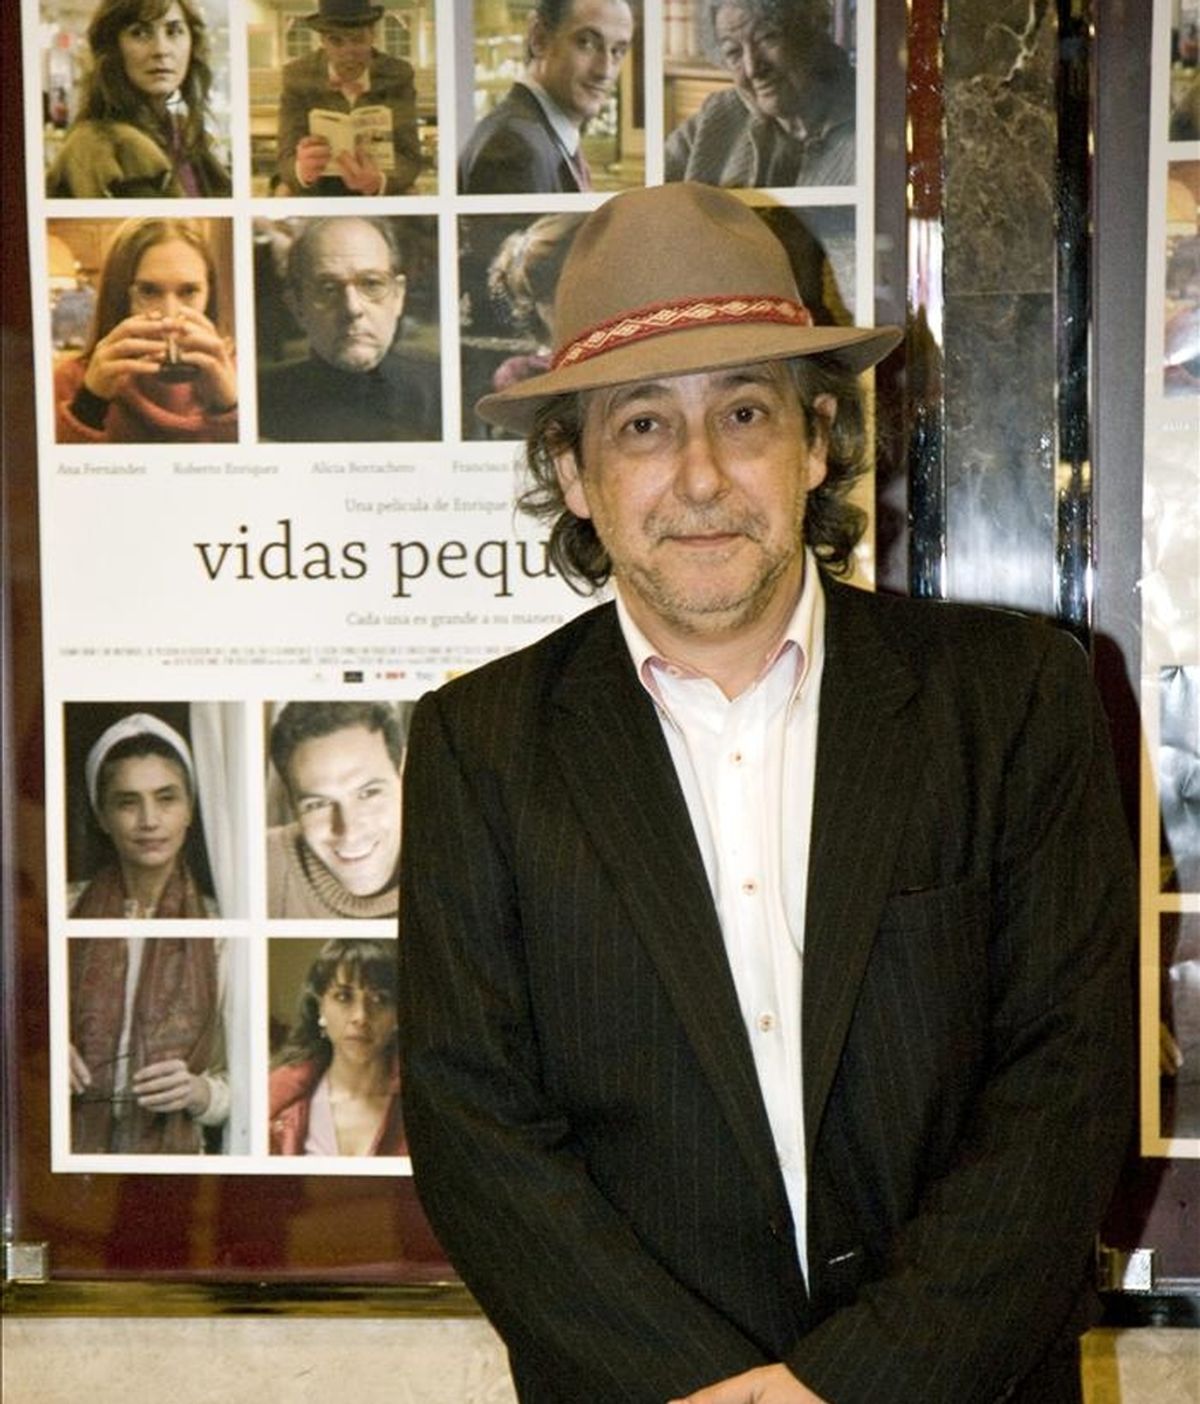 El director argentino Enrique Gabriel durante la presentación en Madrid de su película "Vidas pequeñas" el 16 de marzo pasado. EFE/Archivo